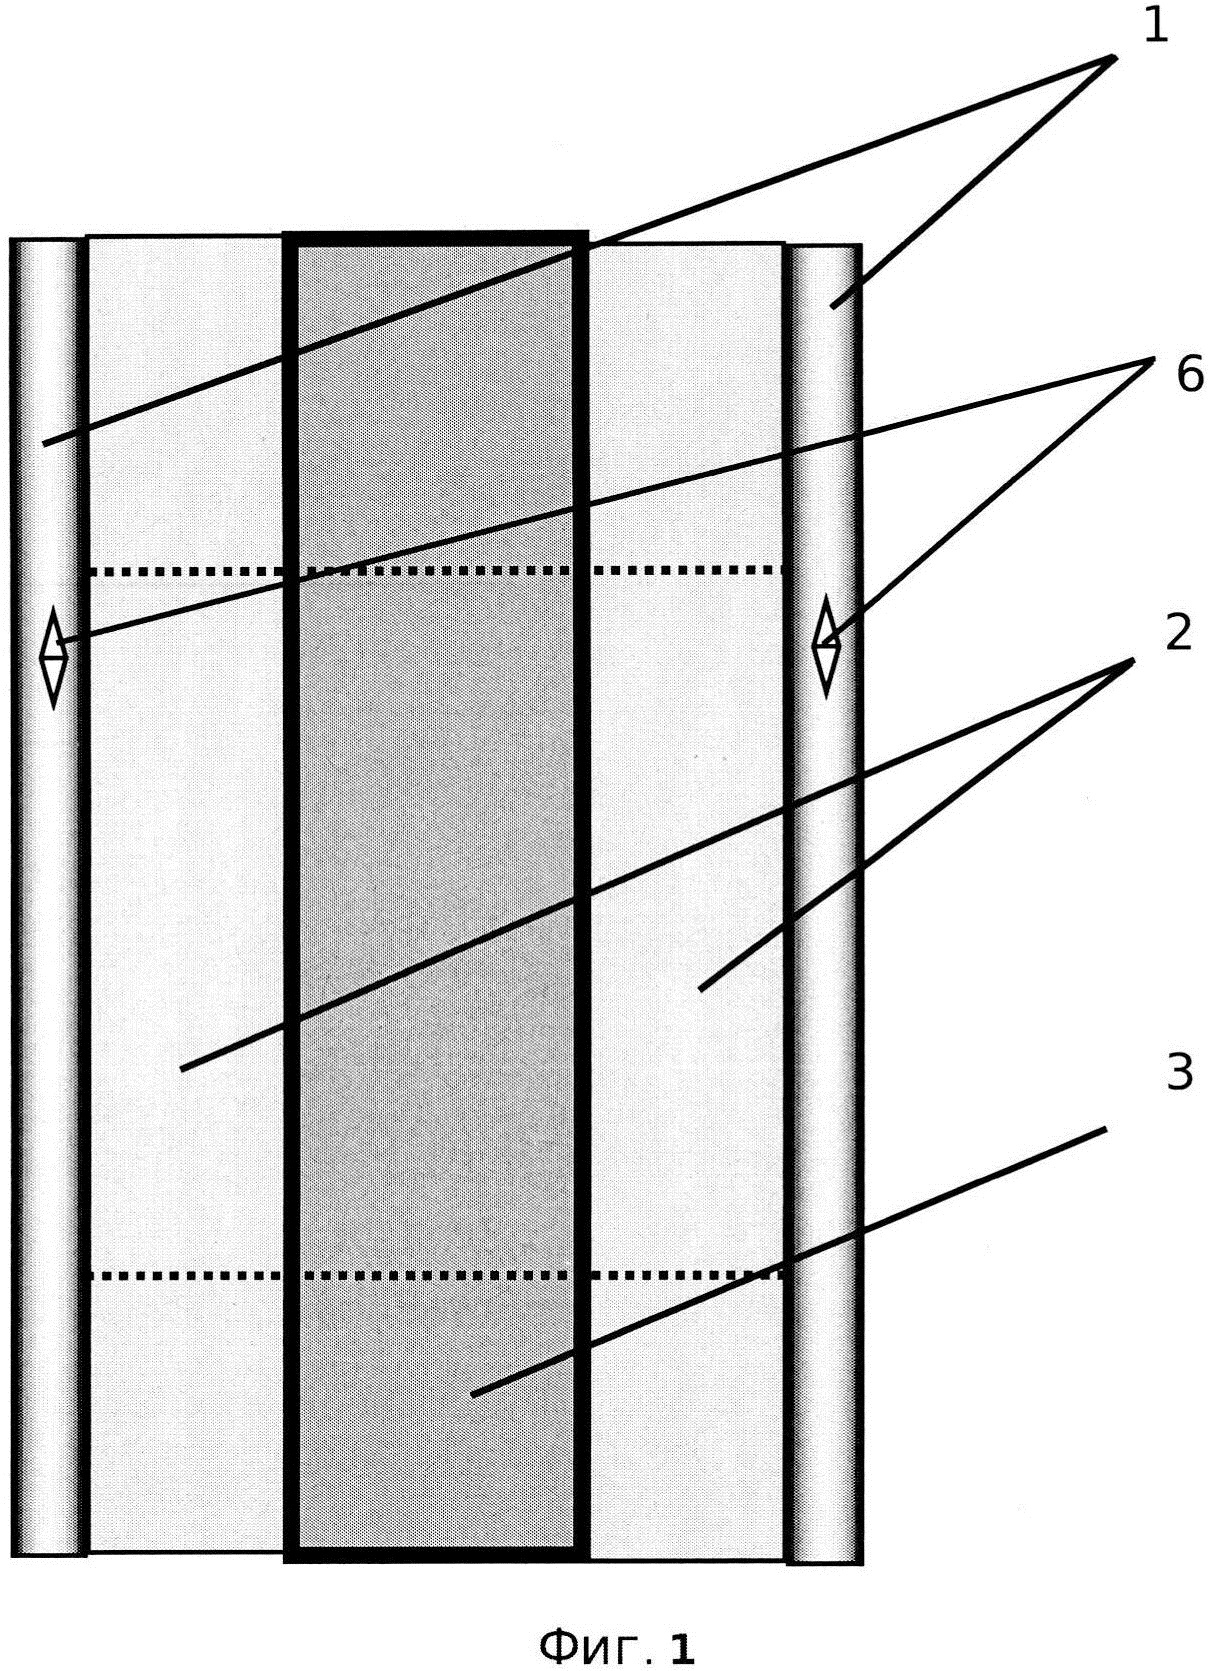 Несъёмная опалубка для монолитного бетона или железобетона из неорганического смарт стекла (варианты)